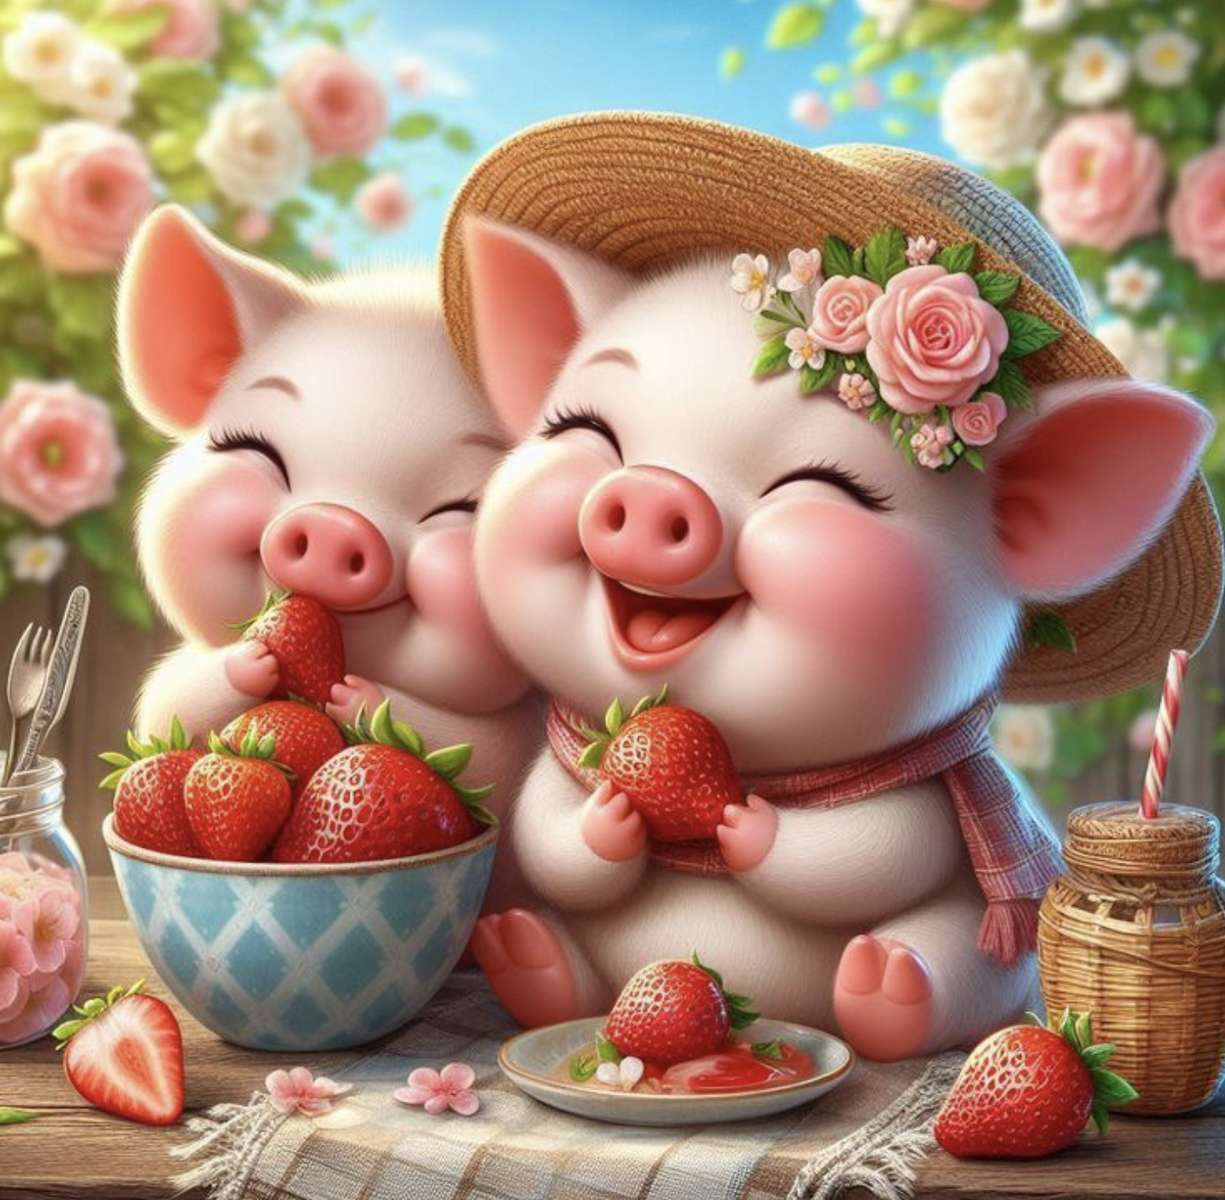 Miam Miam les fraises rompecabezas en línea